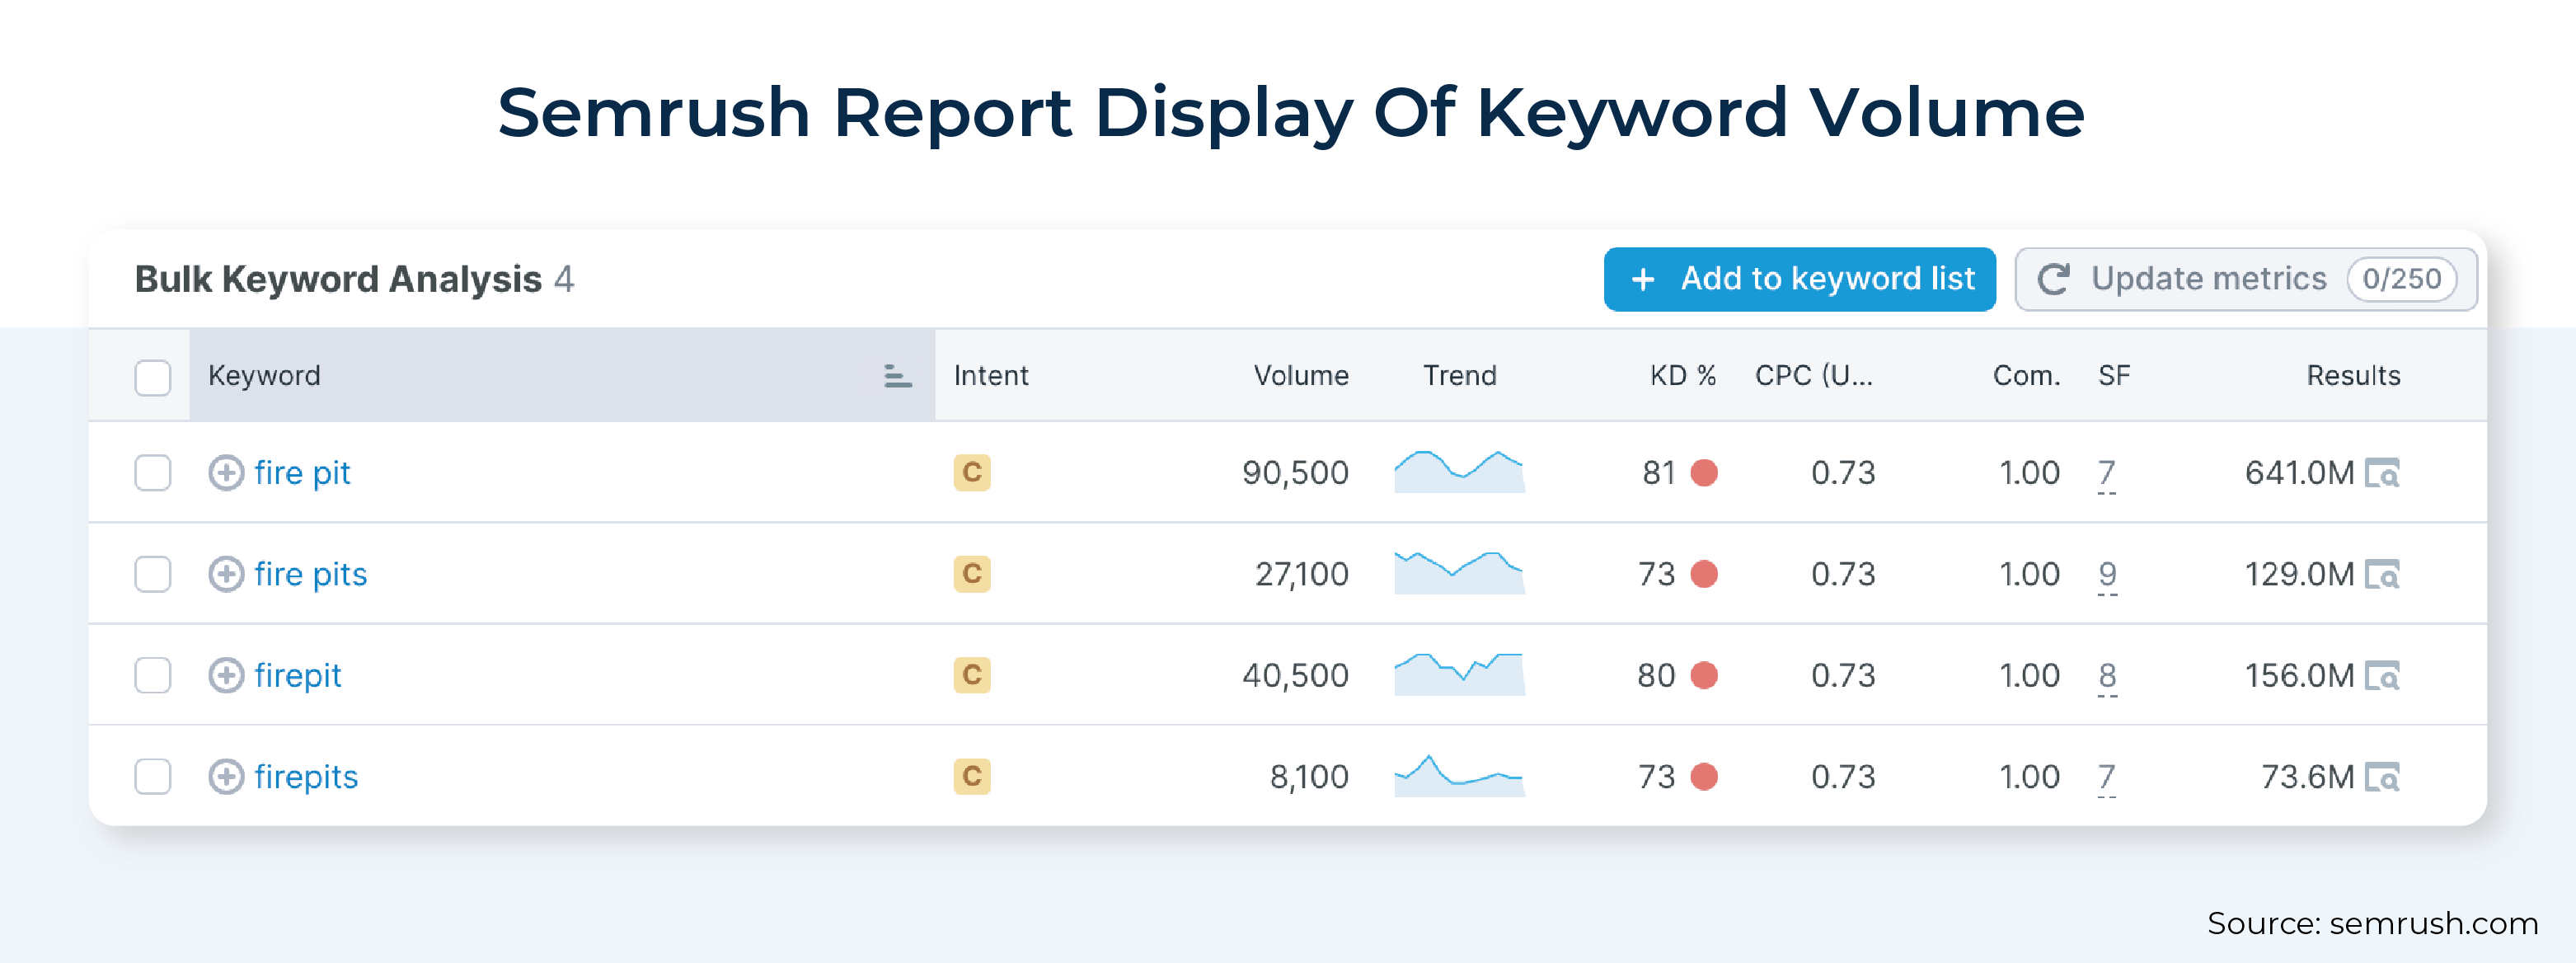 Semrush Report Display Of Keyword Volume